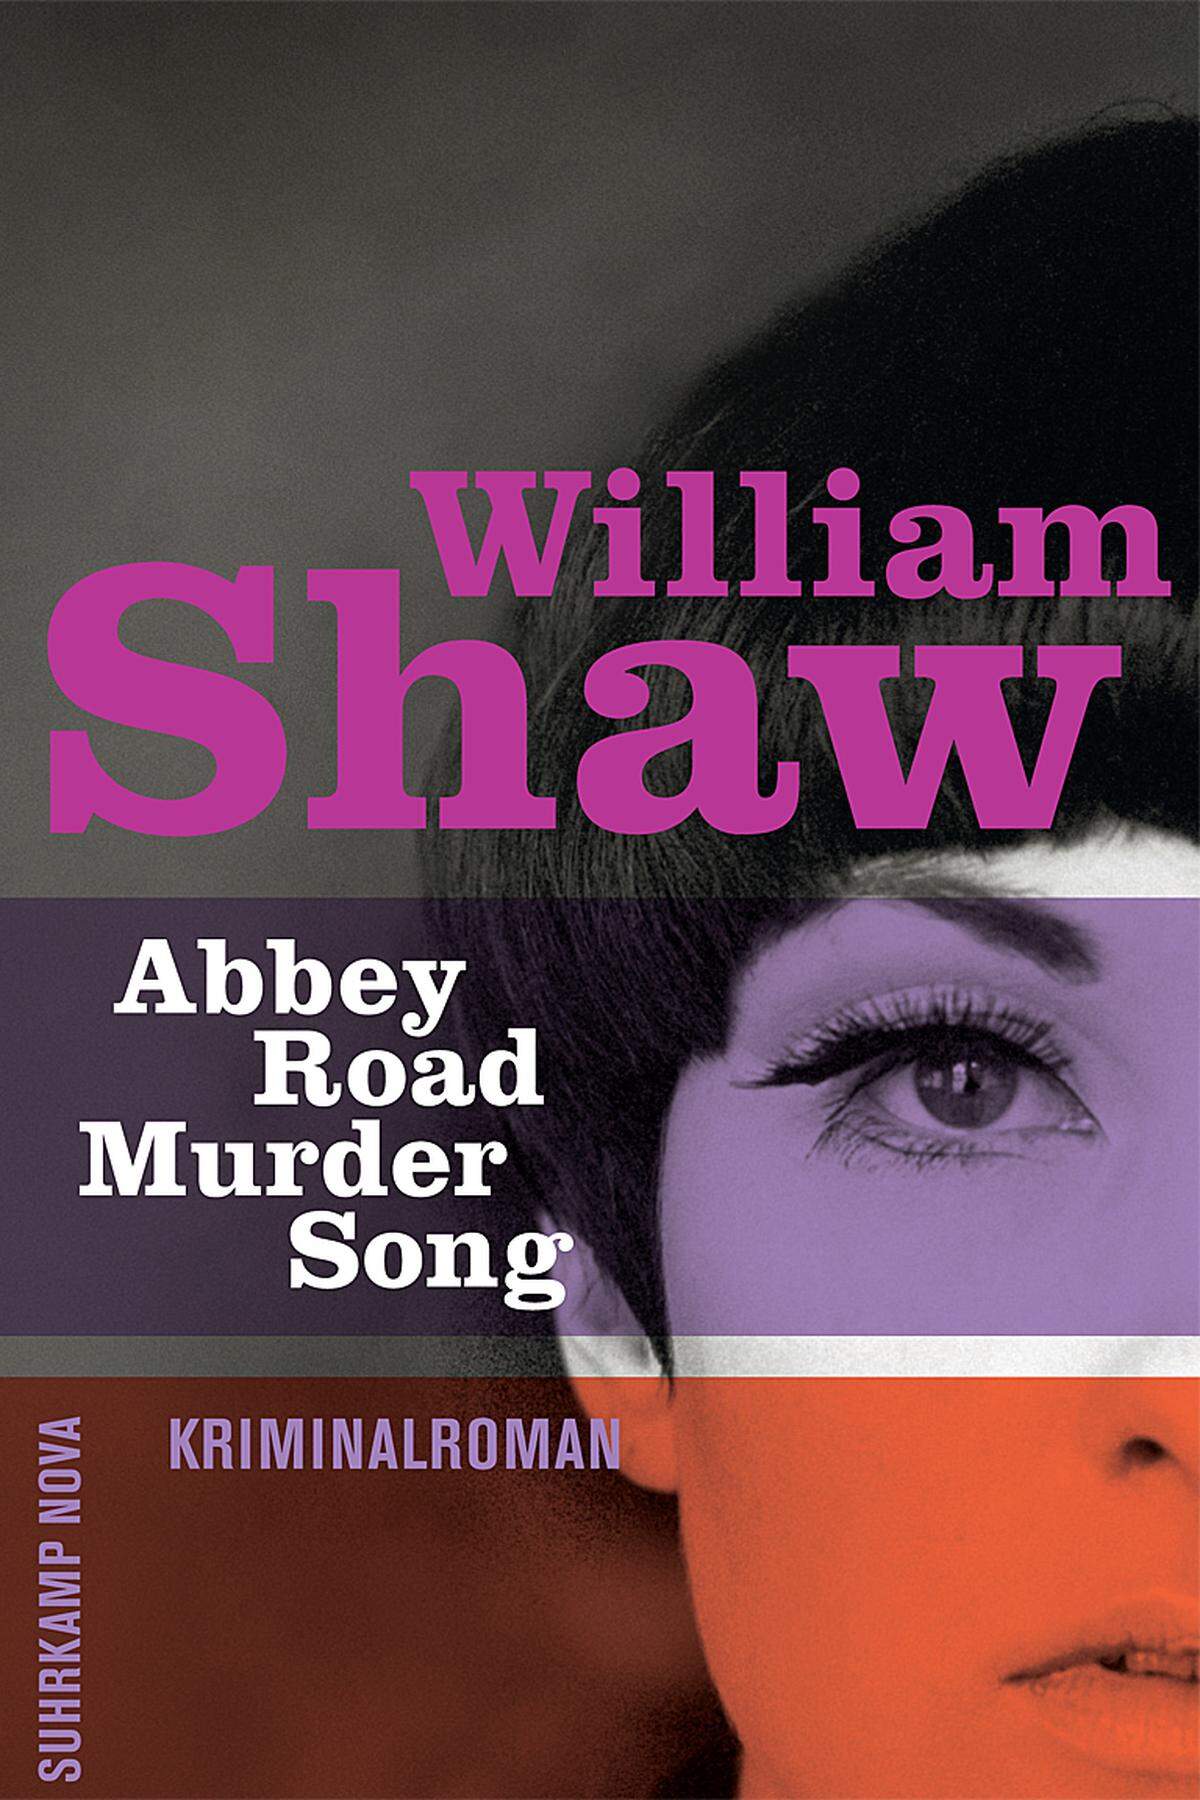 William Shaw: "Abbey Road Murder Song"Im London des Jahres 1968 ist es absolut unüblich, dass Polizistinnen ermitteln und eigene Theorien äußern. Sie dürfen nicht einmal das Dienstfahrzeug steuern. Auch Rassismus prägt das Leben in der Stadt. Die Beatles stehen stellvertretend für jenen Umbruch, zu dem viele Menschen noch nicht bereit sind. Shaw schreibt atmosphärisch dicht und hat eines der charmantesten Ermittlerpaare der modernen Kriminalliteratur geschaffen. William Shaw: "Abbey Road Murder Song", übersetzt von Conny Lösch, Suhrkamp nova, 475 Seiten, 15,50 Euro.